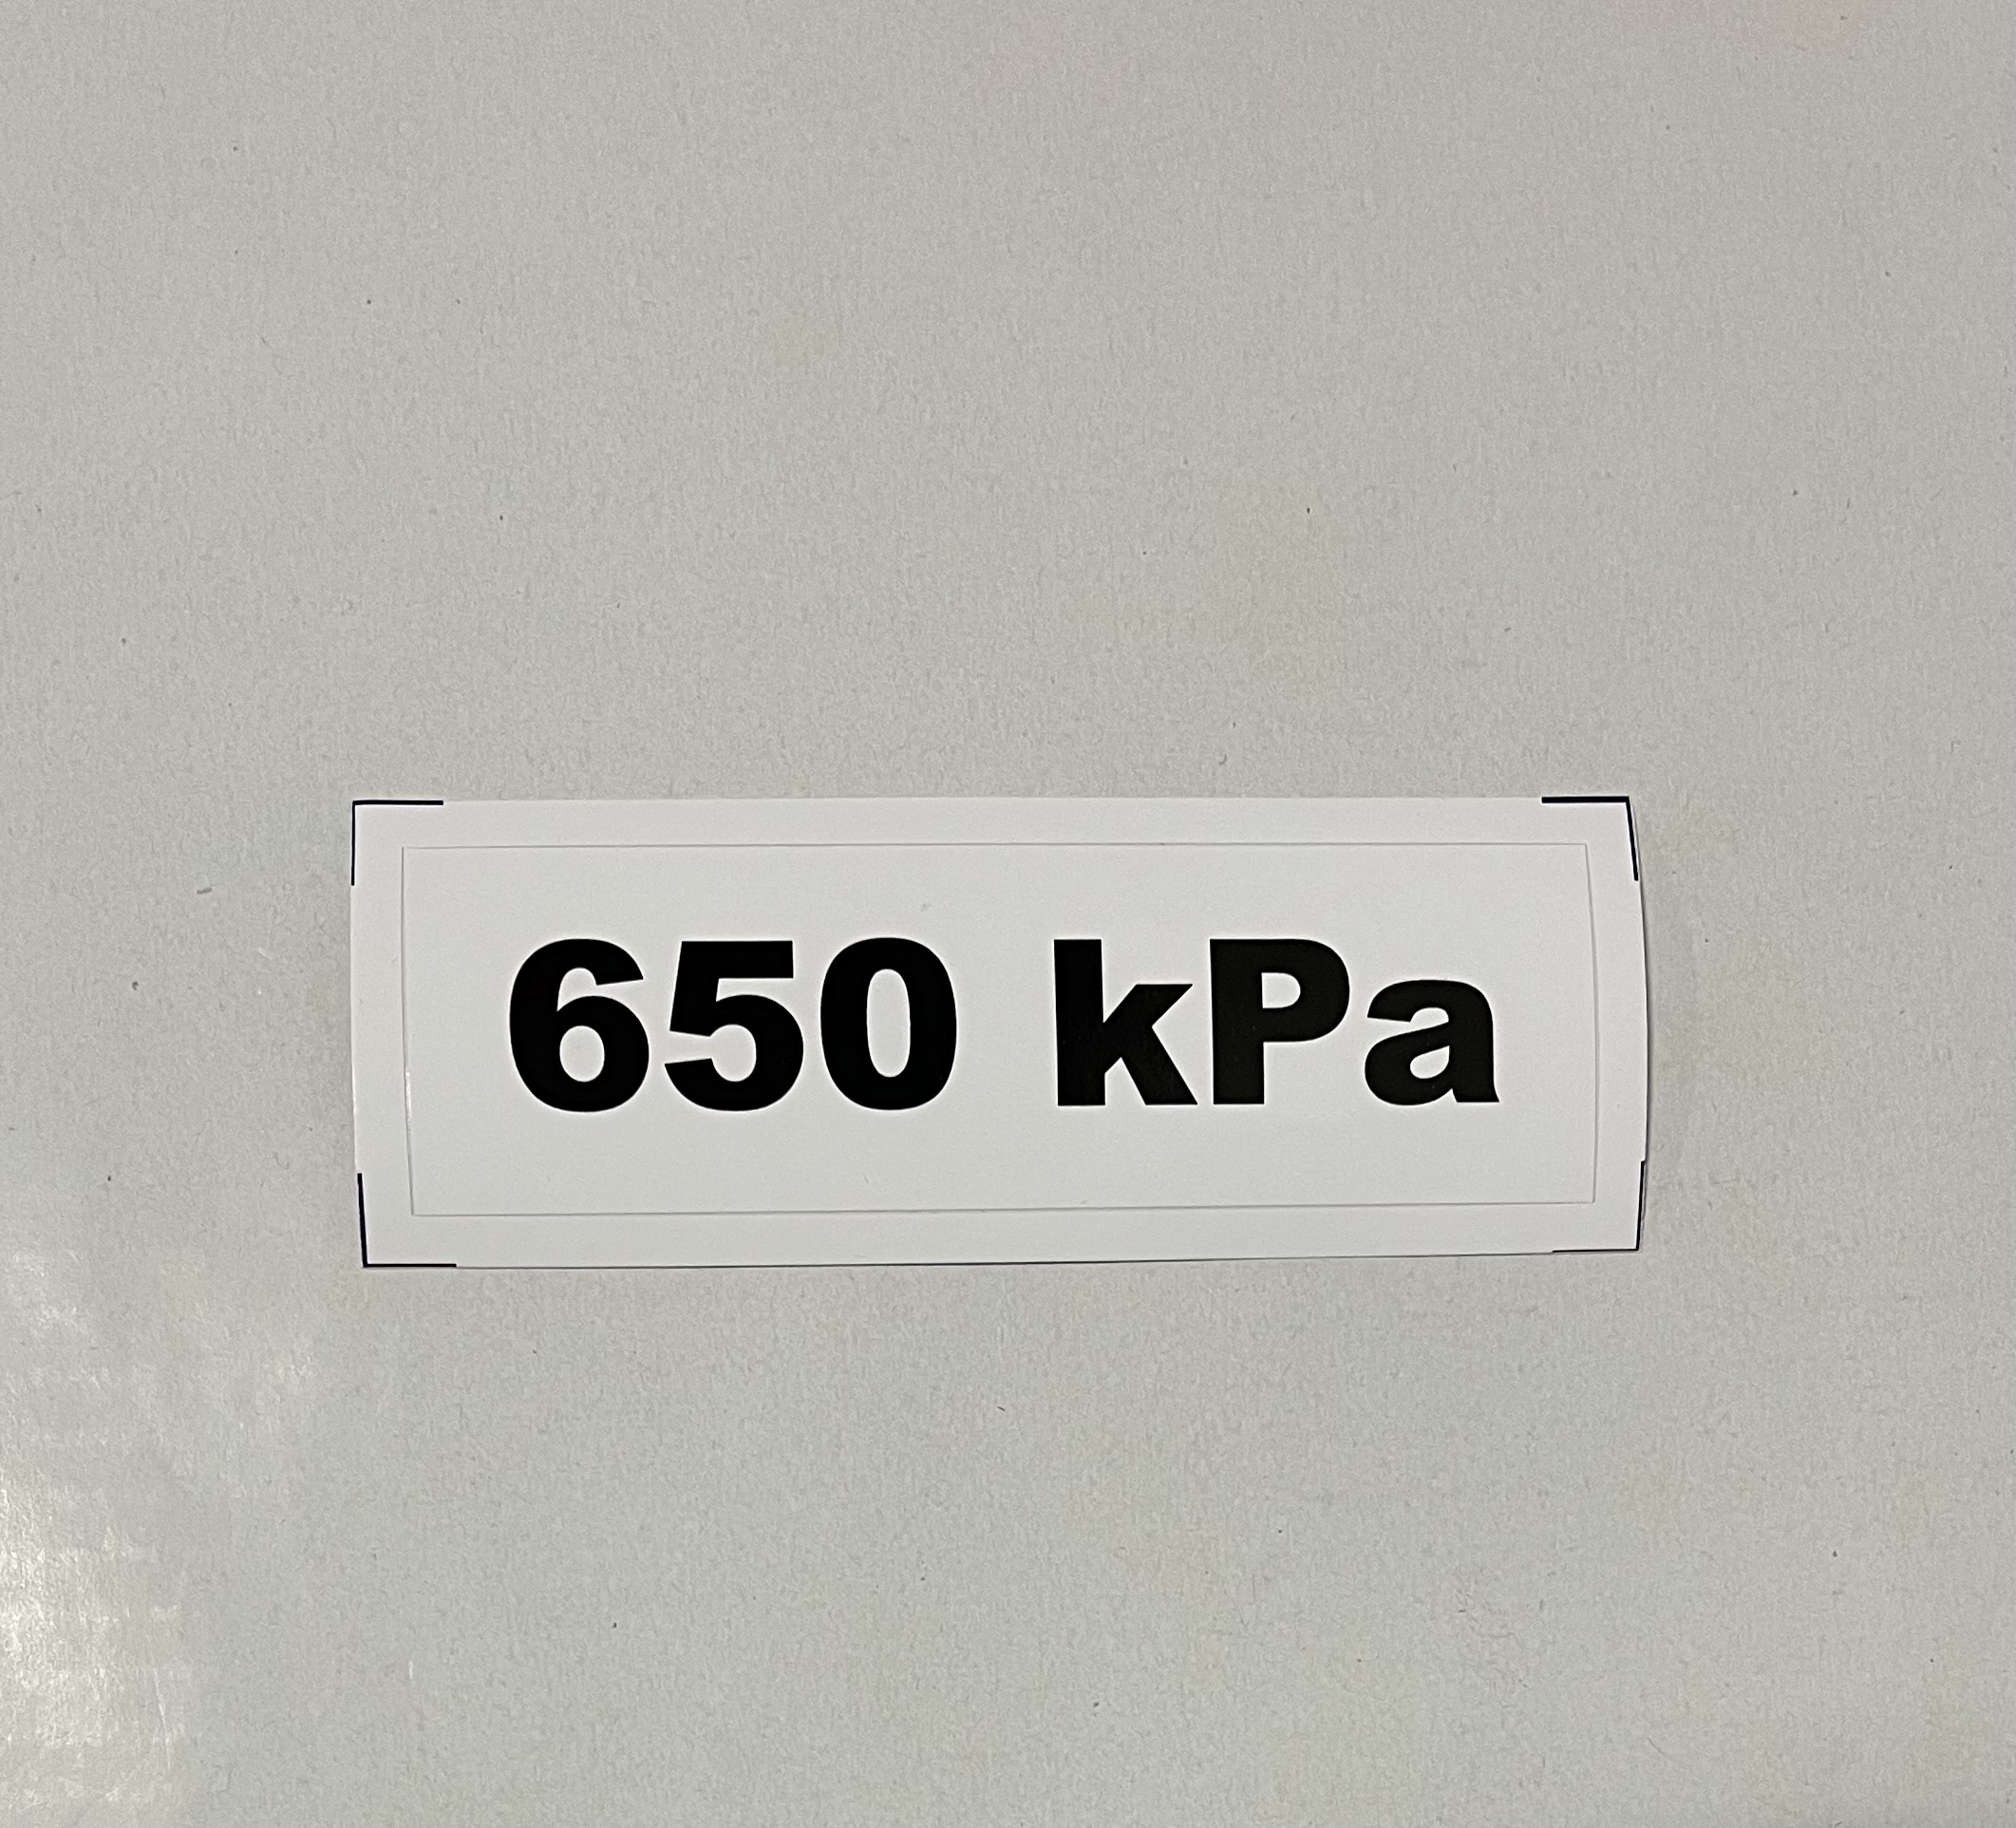 Označenie kPa 650